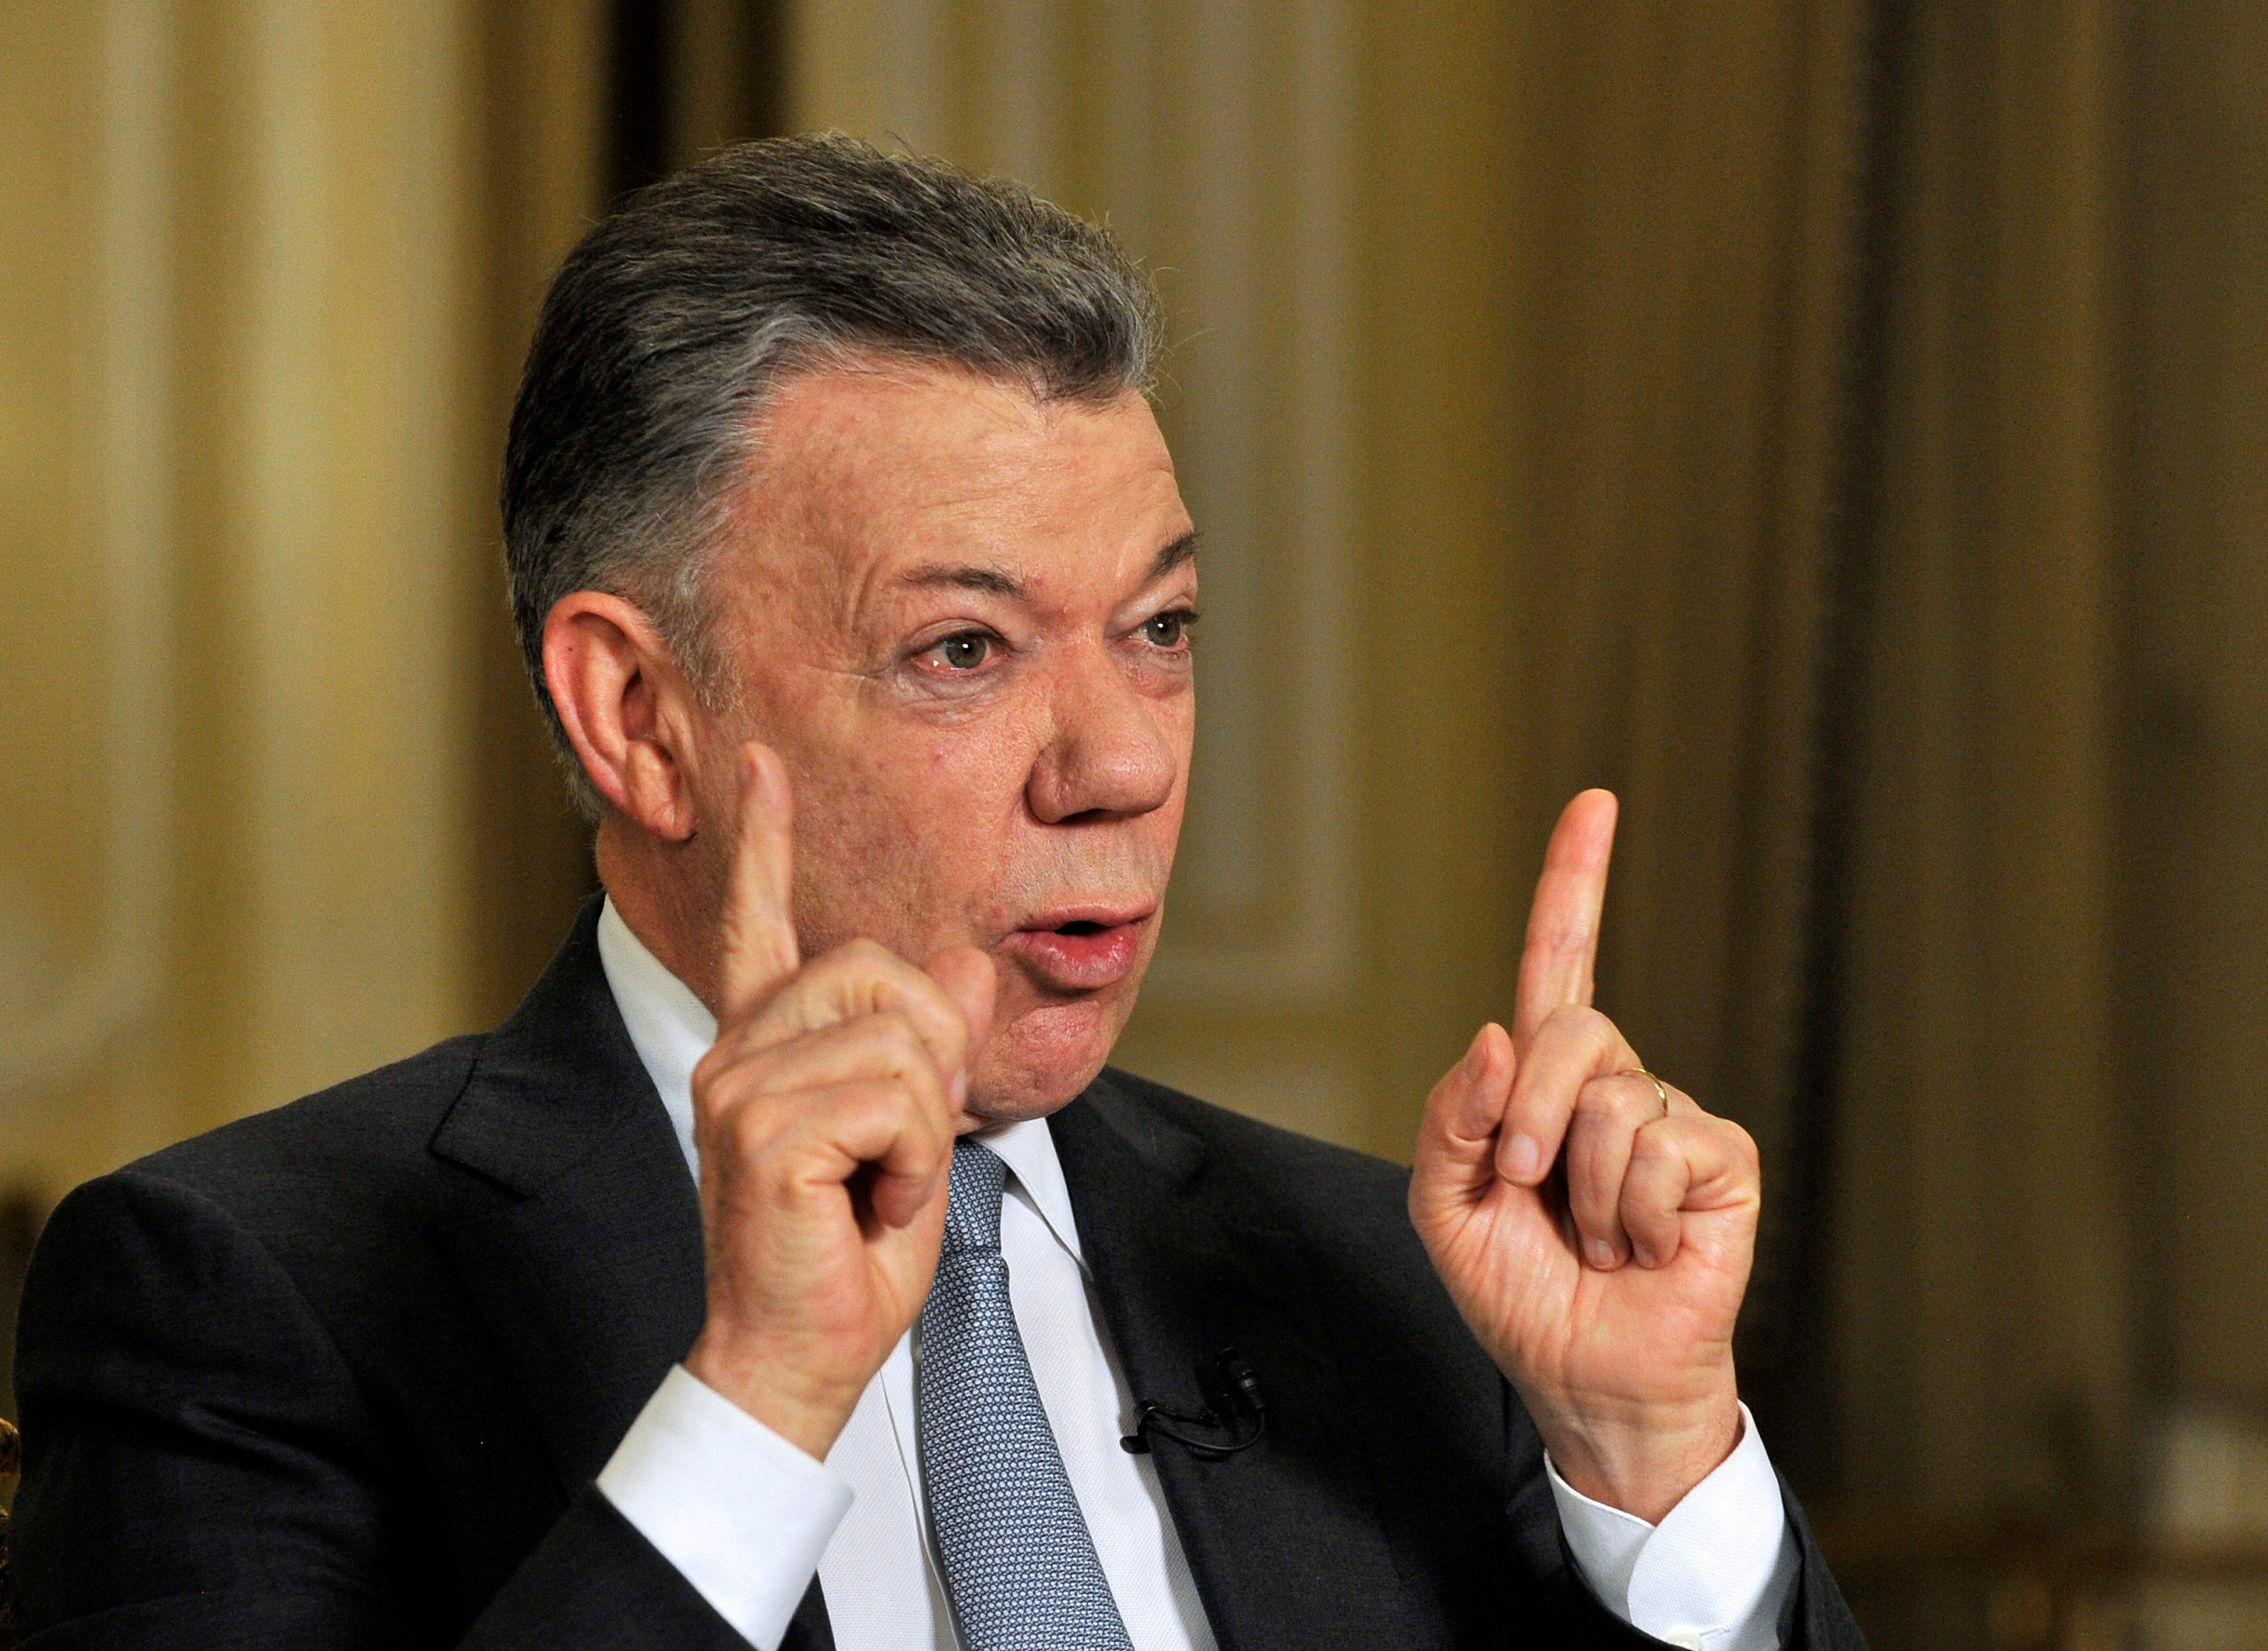 presidencia colombiana dice que acusacion maduro santos carece fundamento